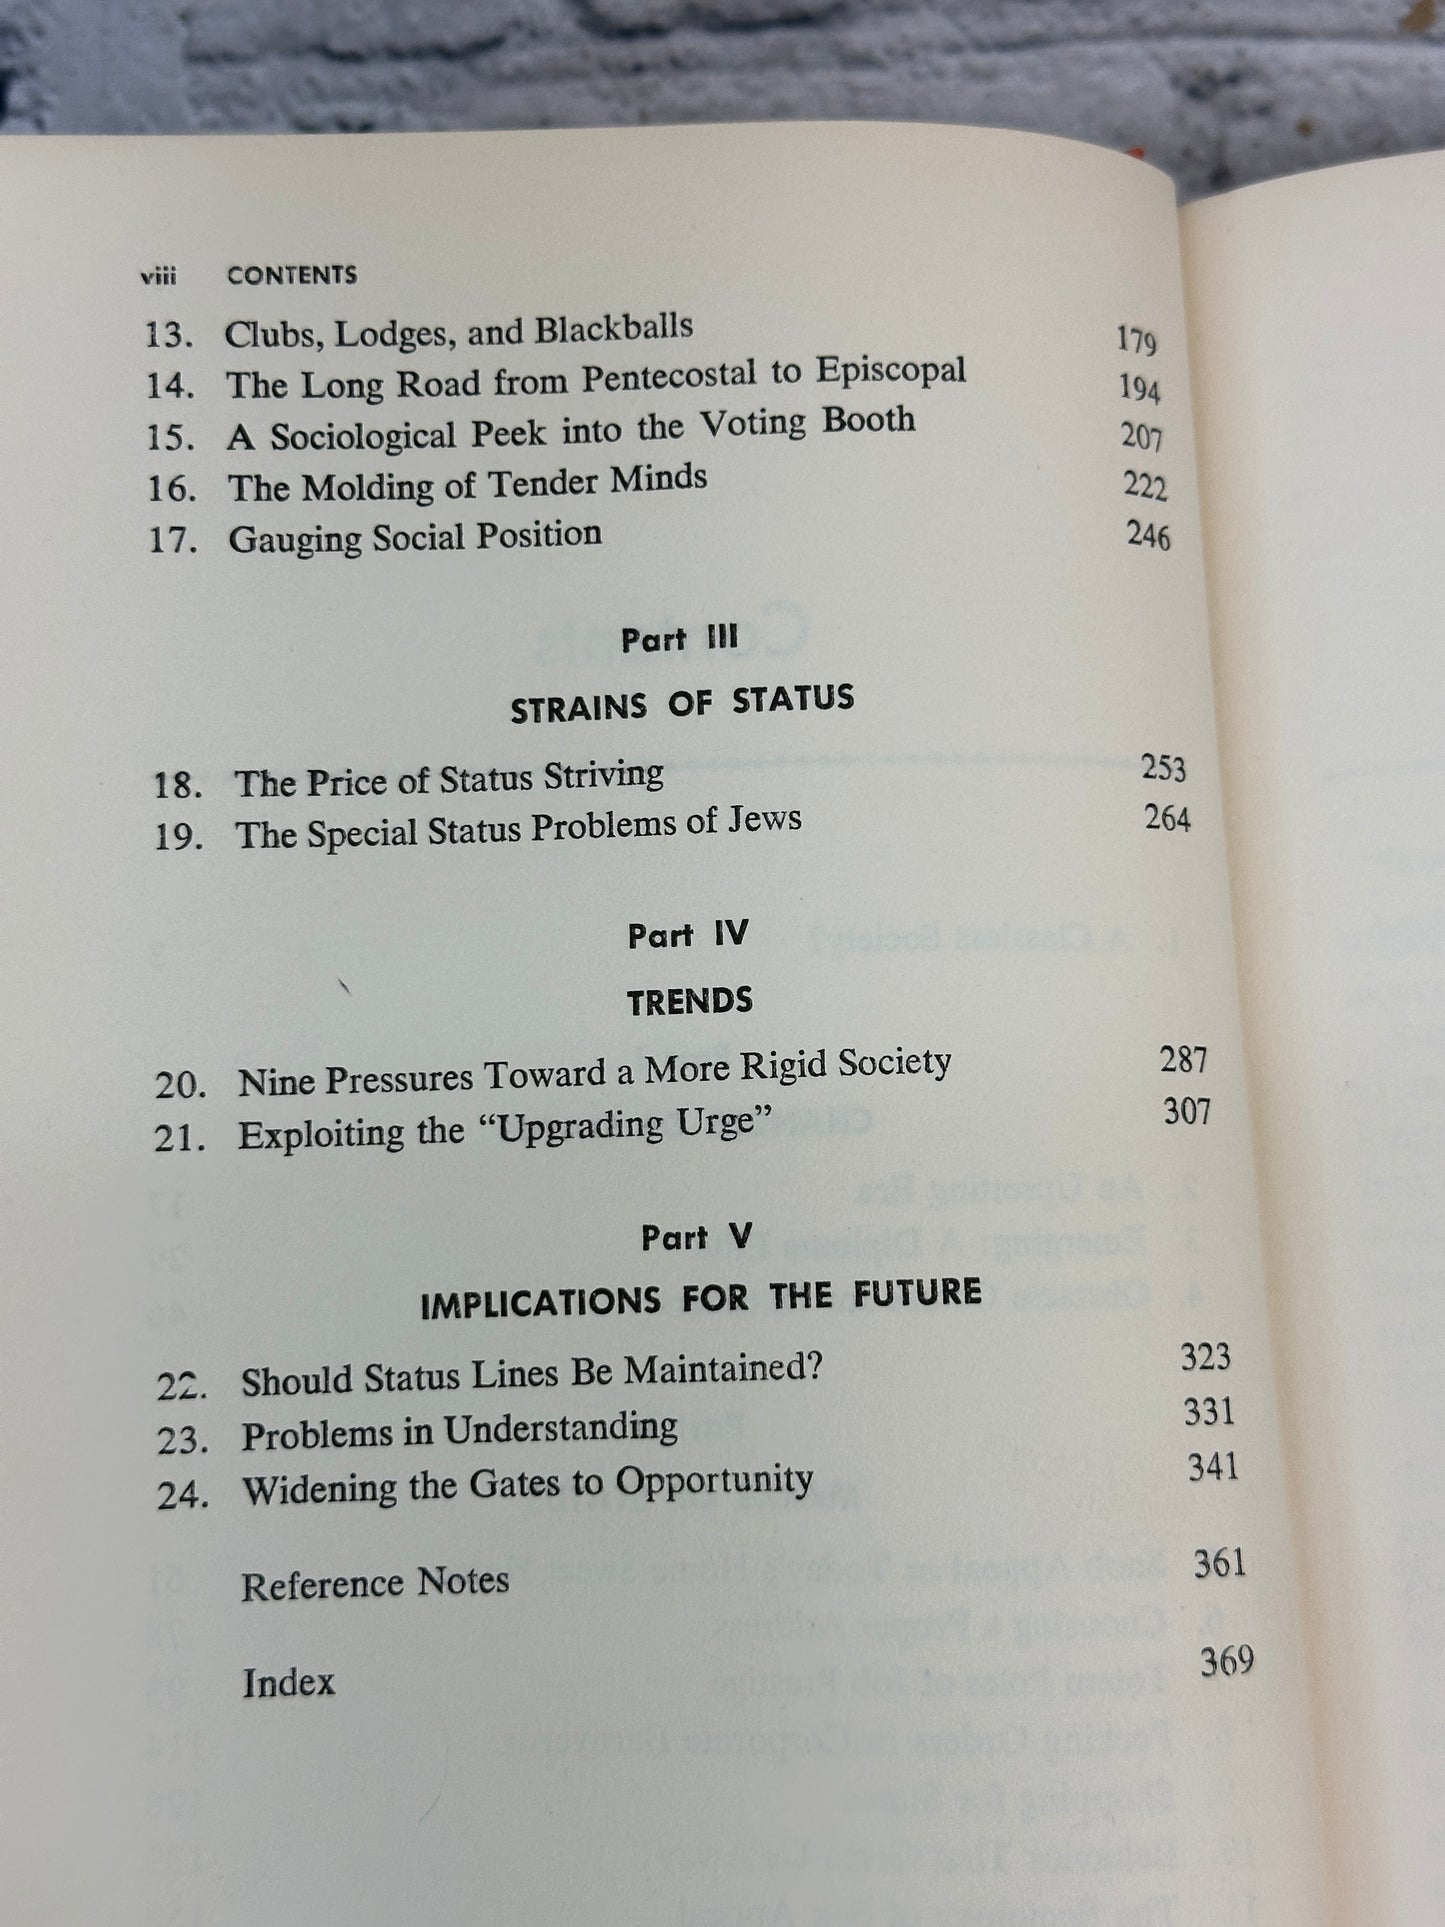 The Status Seekers by Vance Packard [1959 · Eighth Printing]